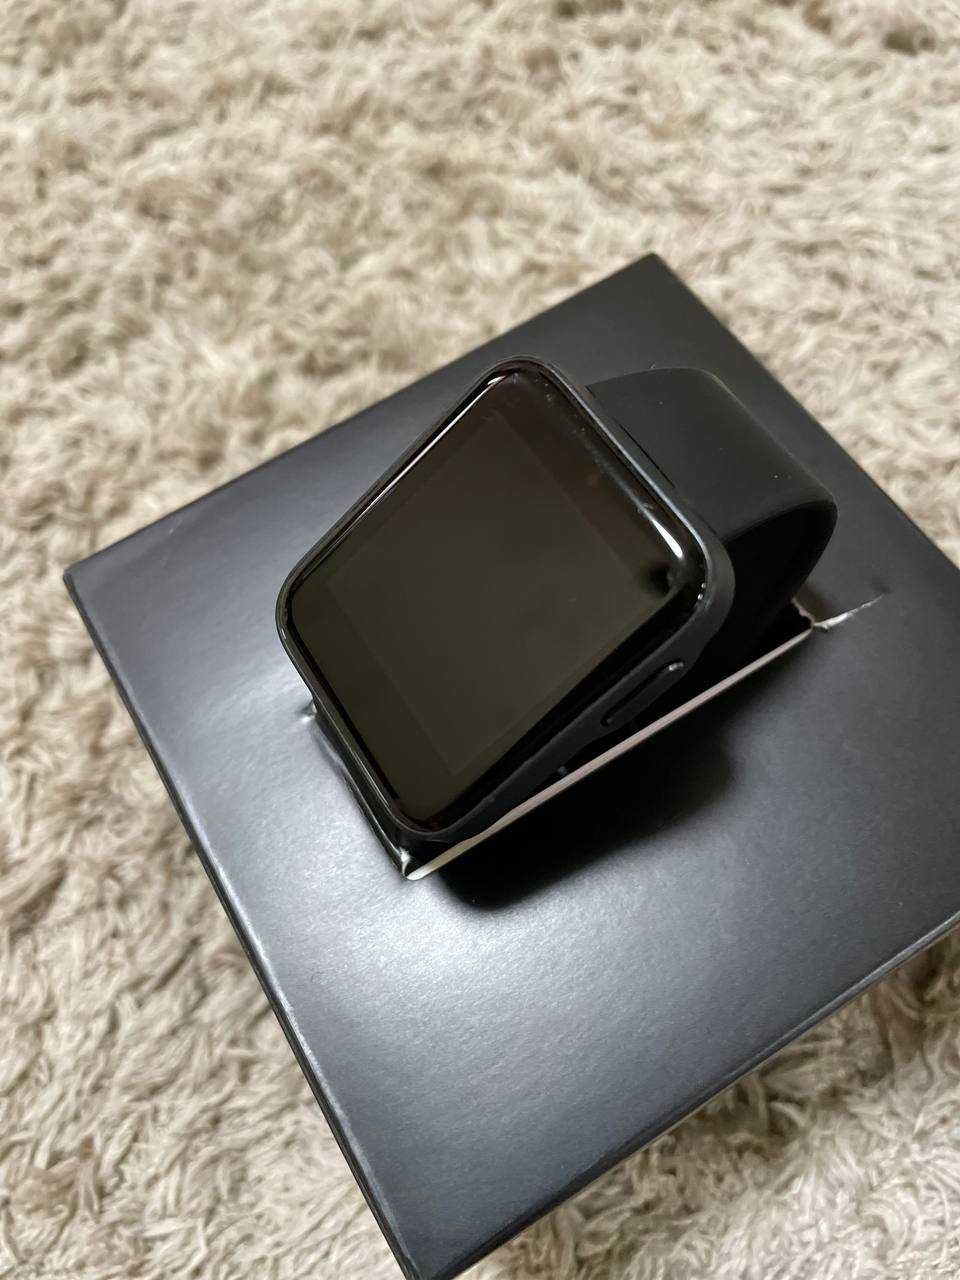 Смарт-часы Xiaomi Mi Watch Lite Black